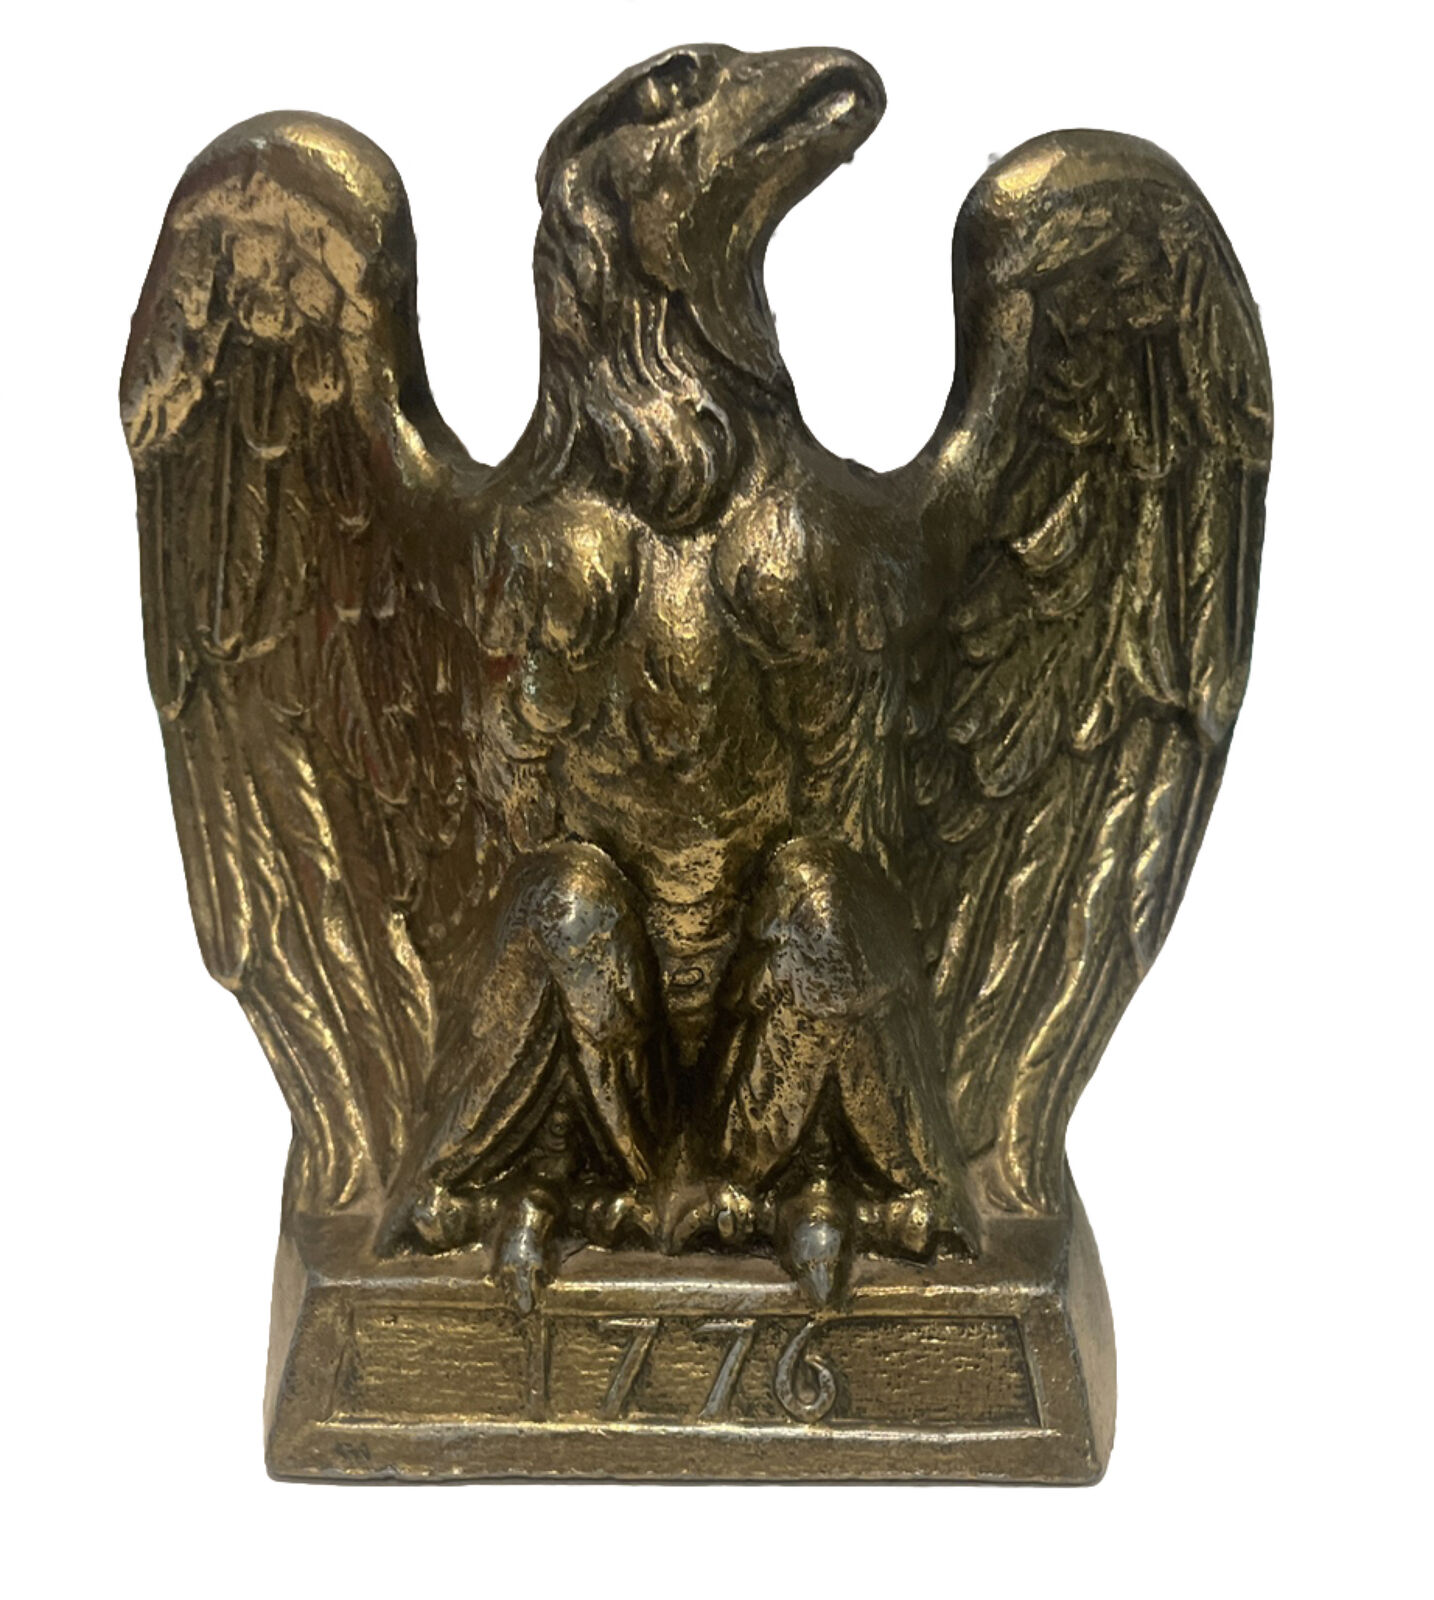 VTG 1776 EAGLE BOOKEND 1972 COLONIAL VIRGINIA HAMPTON VA GOLD BRASS HEAVY BIRD